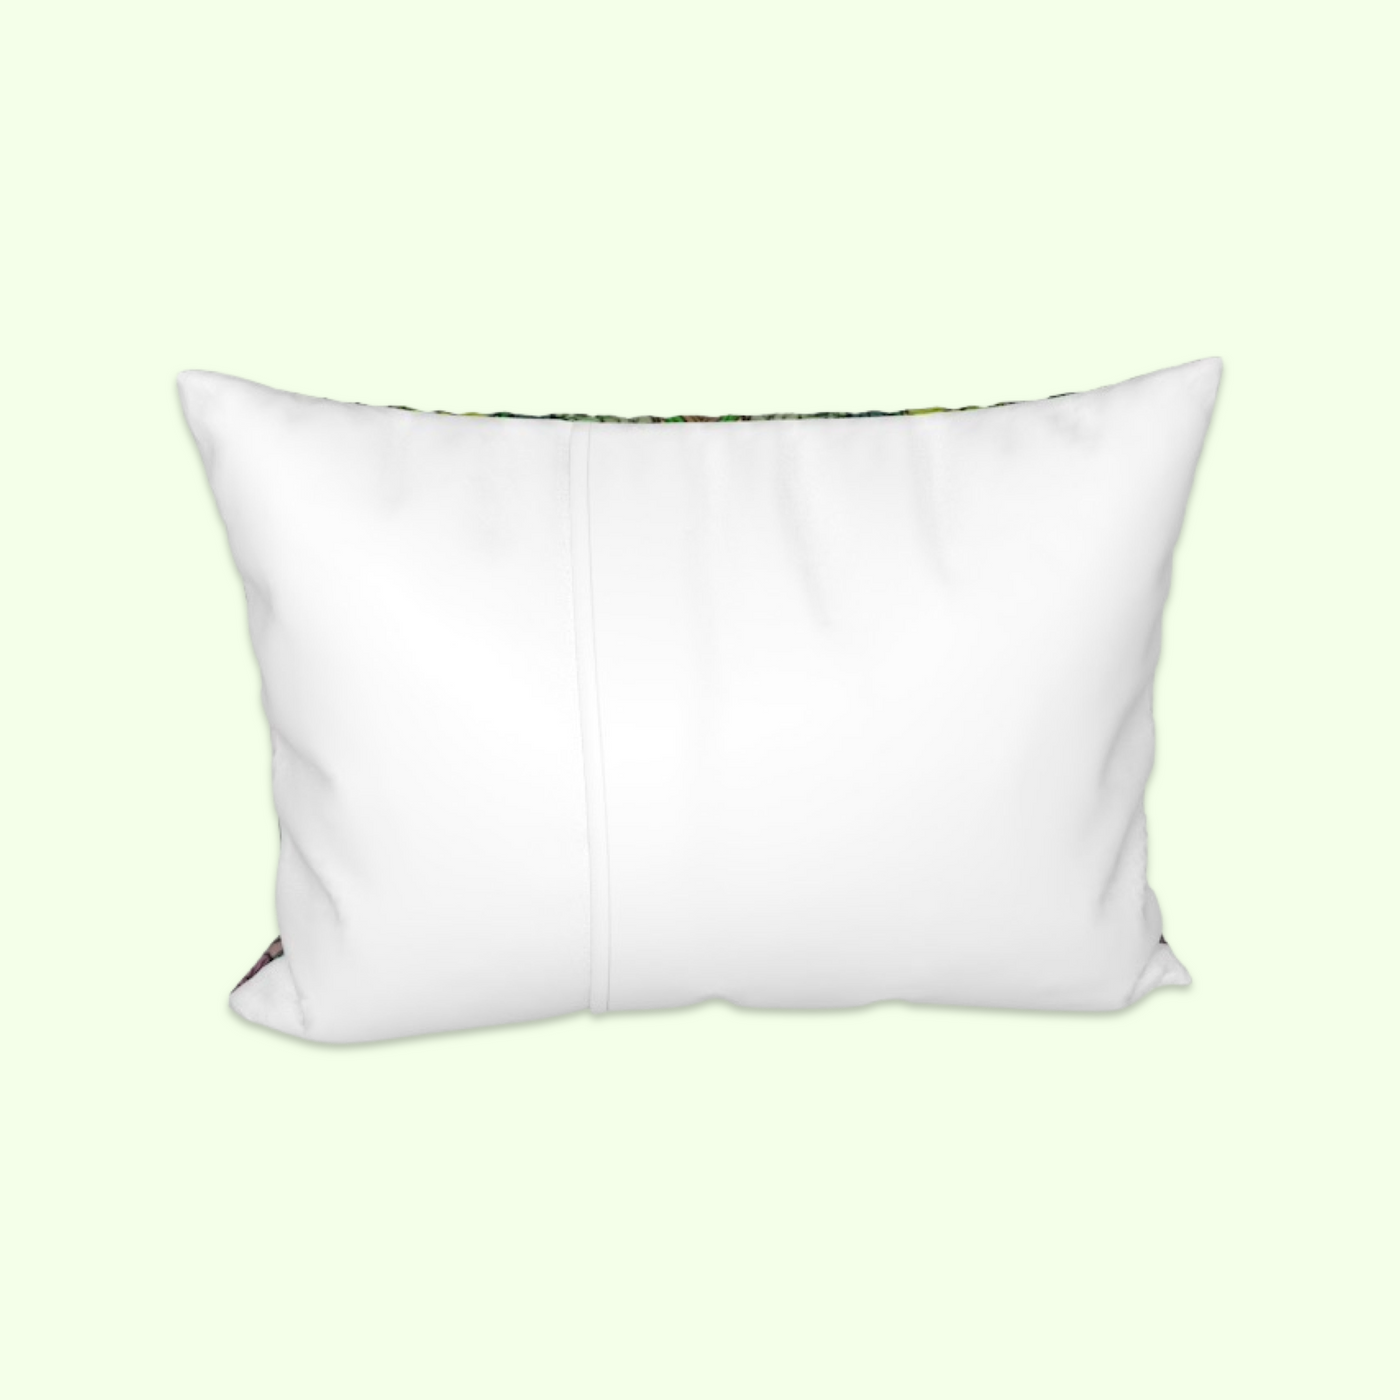 Nuvula Green Art- Green Pillow